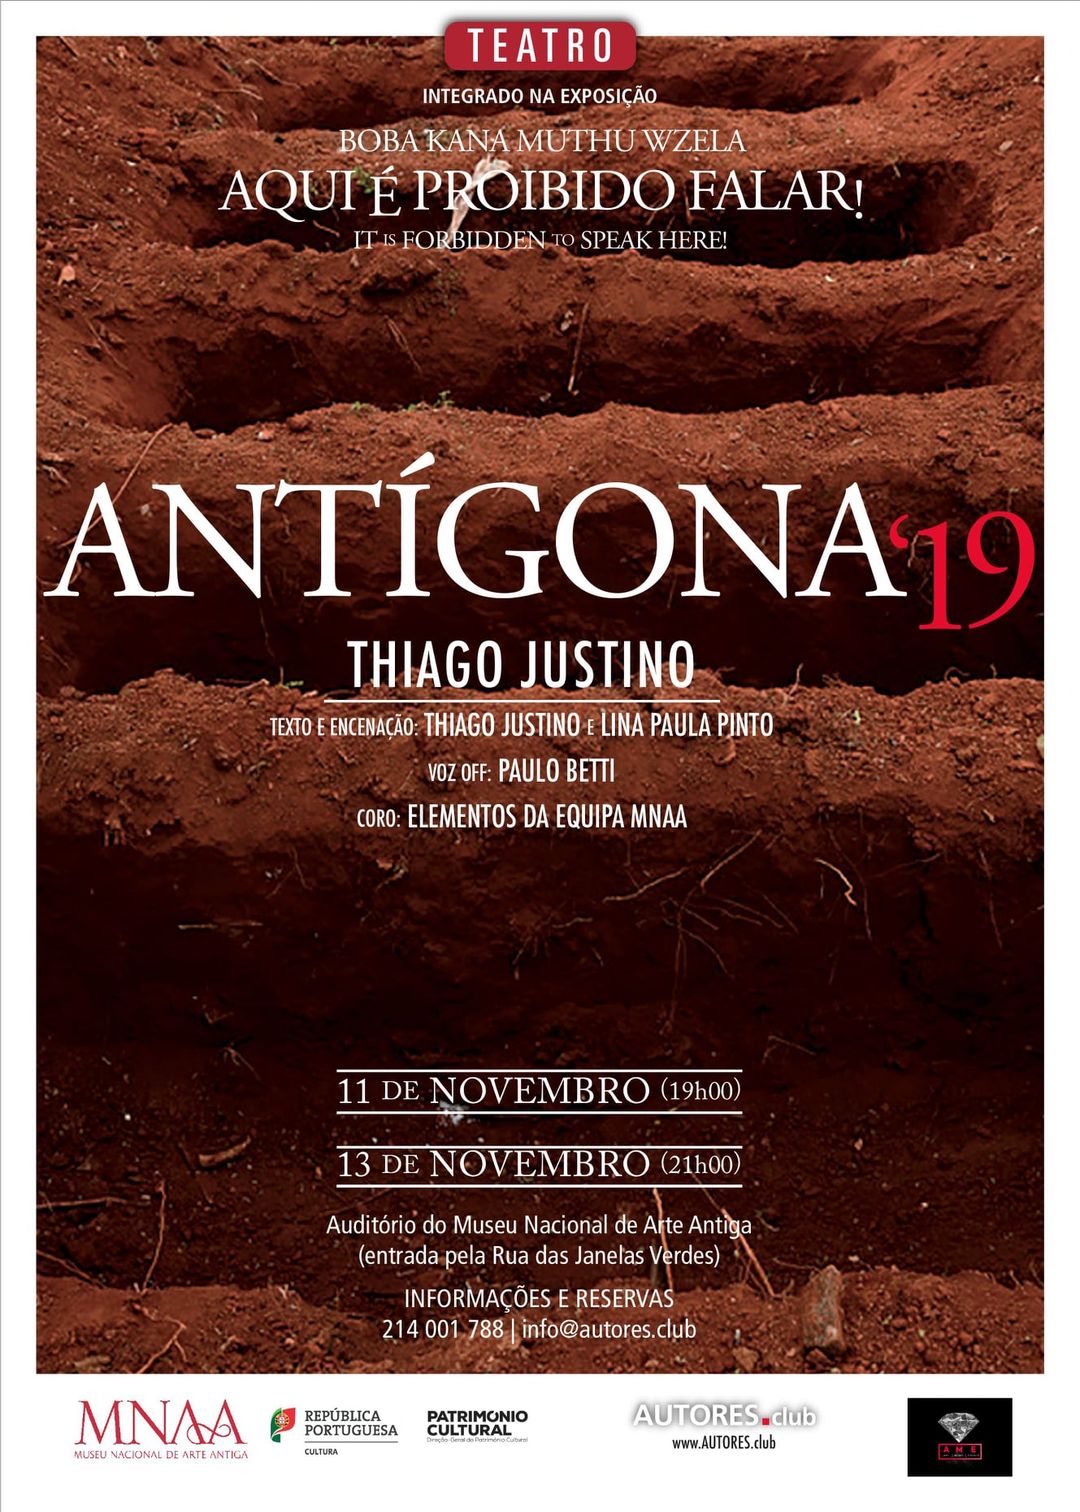 Antígona’19 no Museu Nacional de Arte Antiga